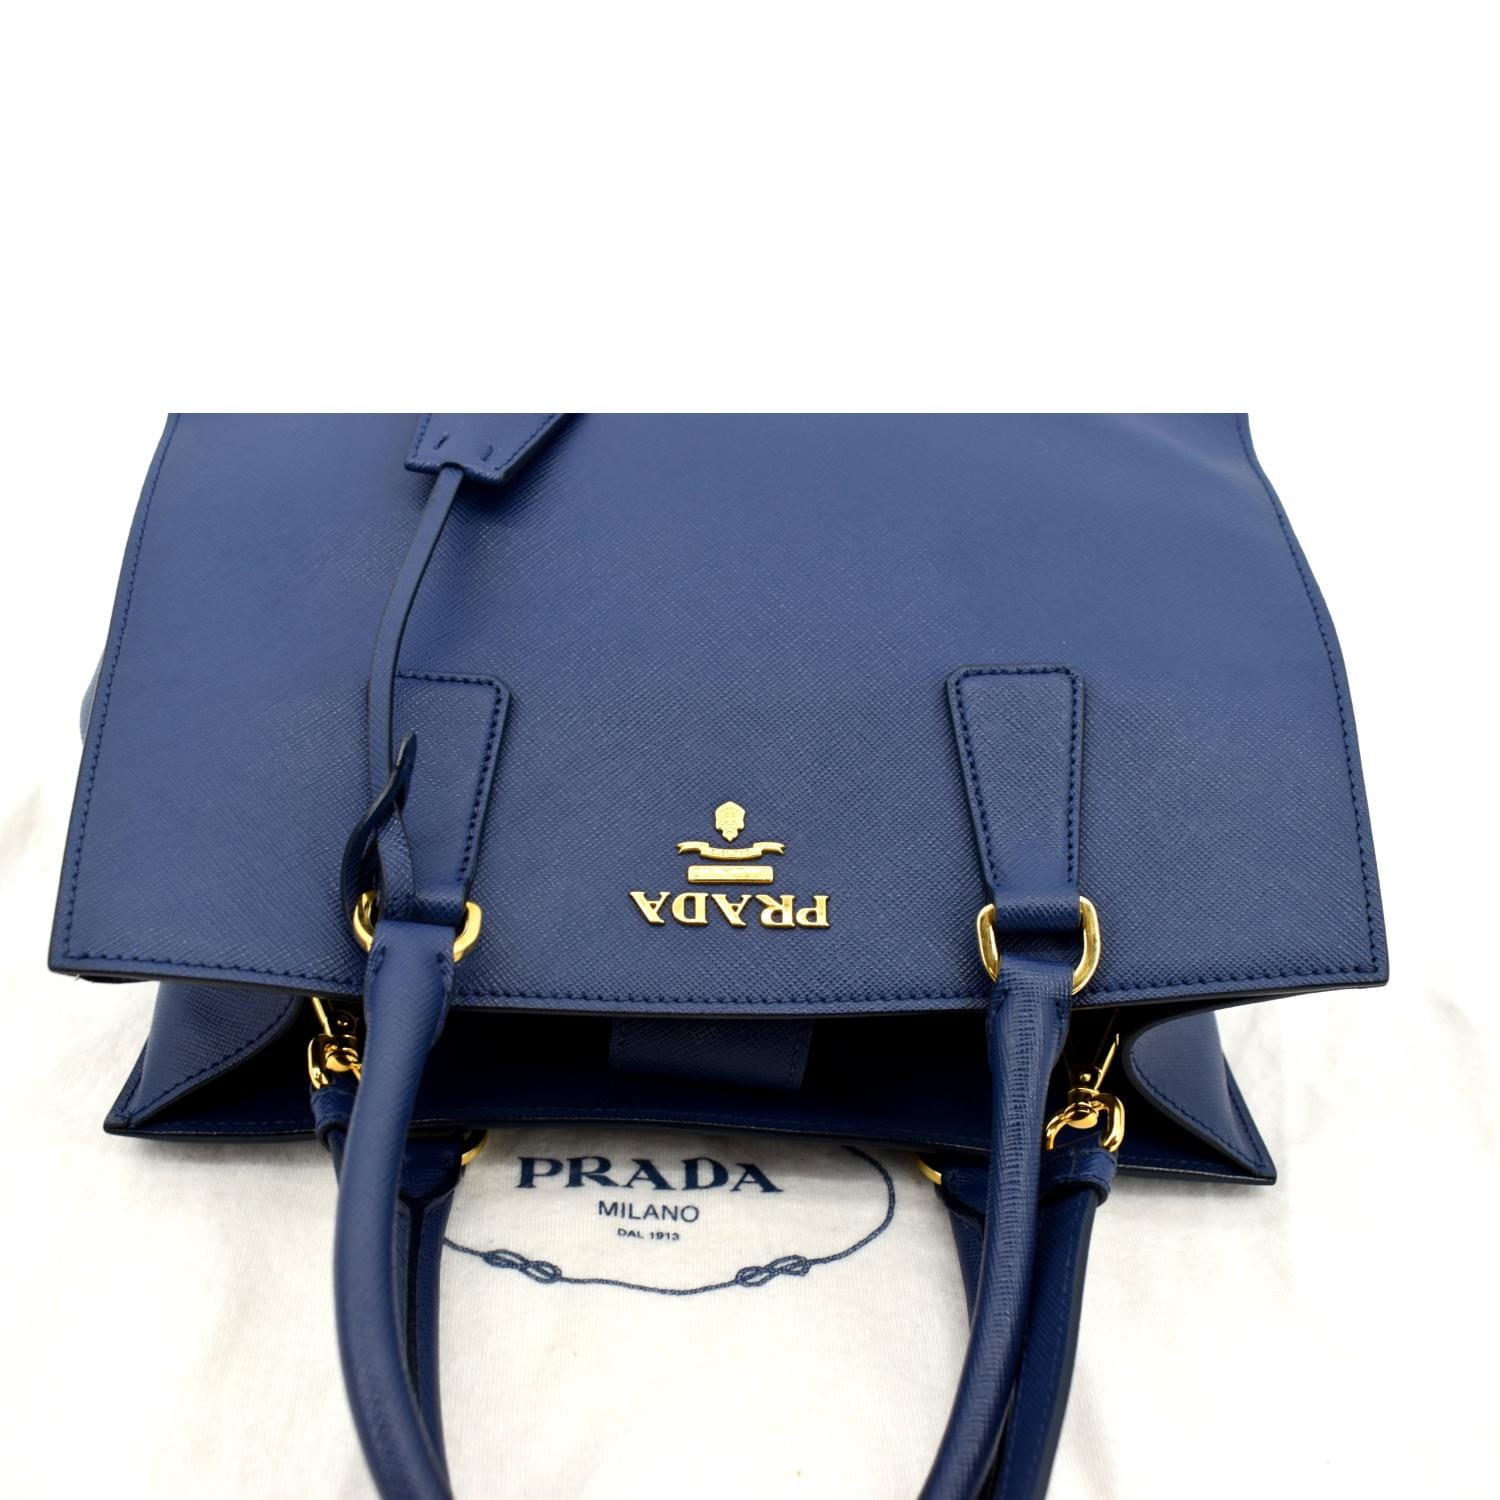 Shop Prada Saffiano Leather Travel Bag